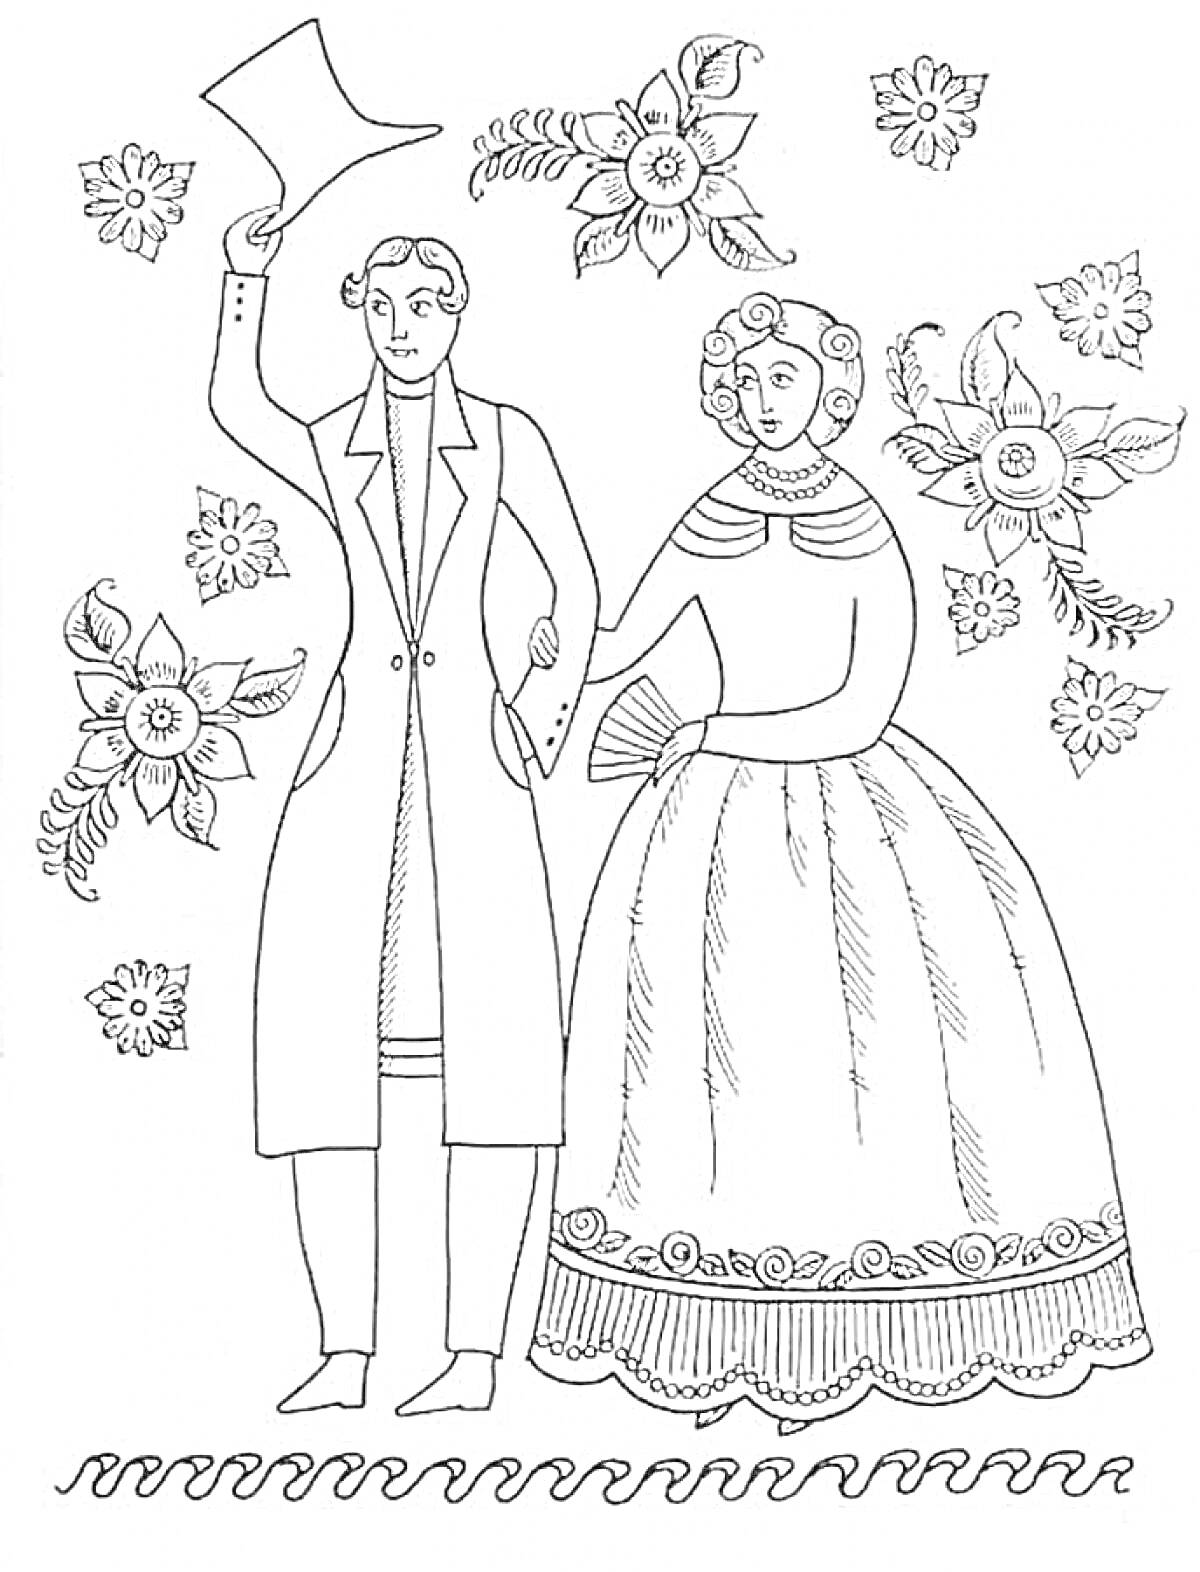 Раскраска Пара в традиционных костюмах среди цветов